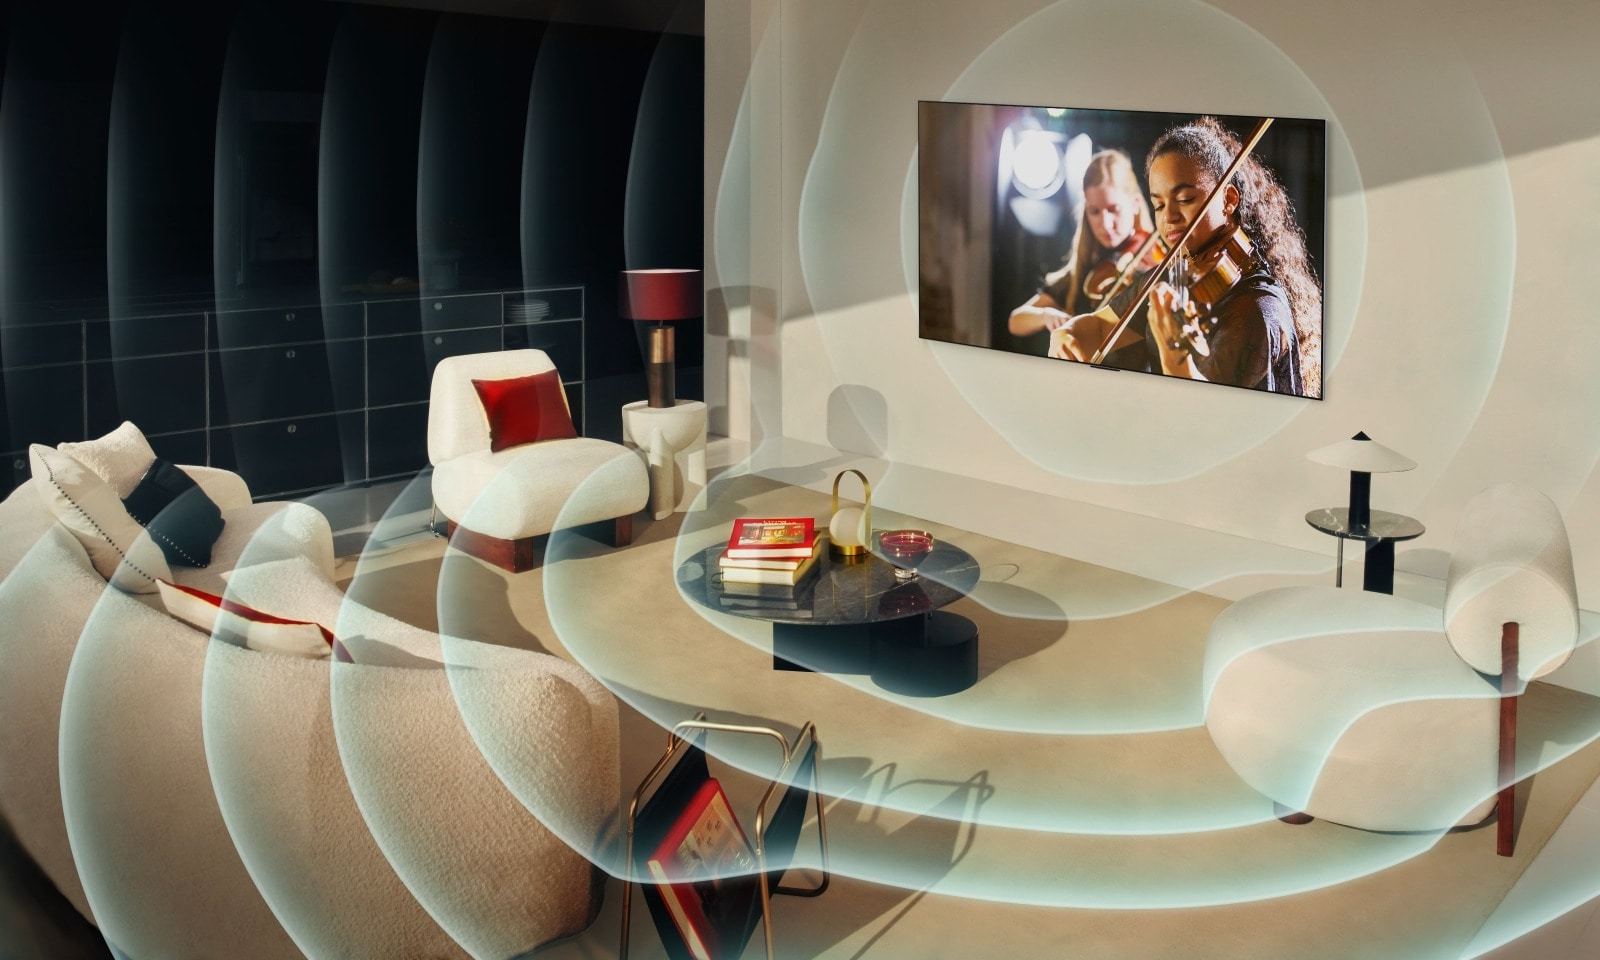 LG OLED TV v sodobnem mestnem stanovanju. Nad sliko se prikaže mreža, kot da bi skenirali prostor, nato pa se iz zaslona projicirajo modri zvočni valovi, ki popolnoma napolnijo prostor z zvokom.